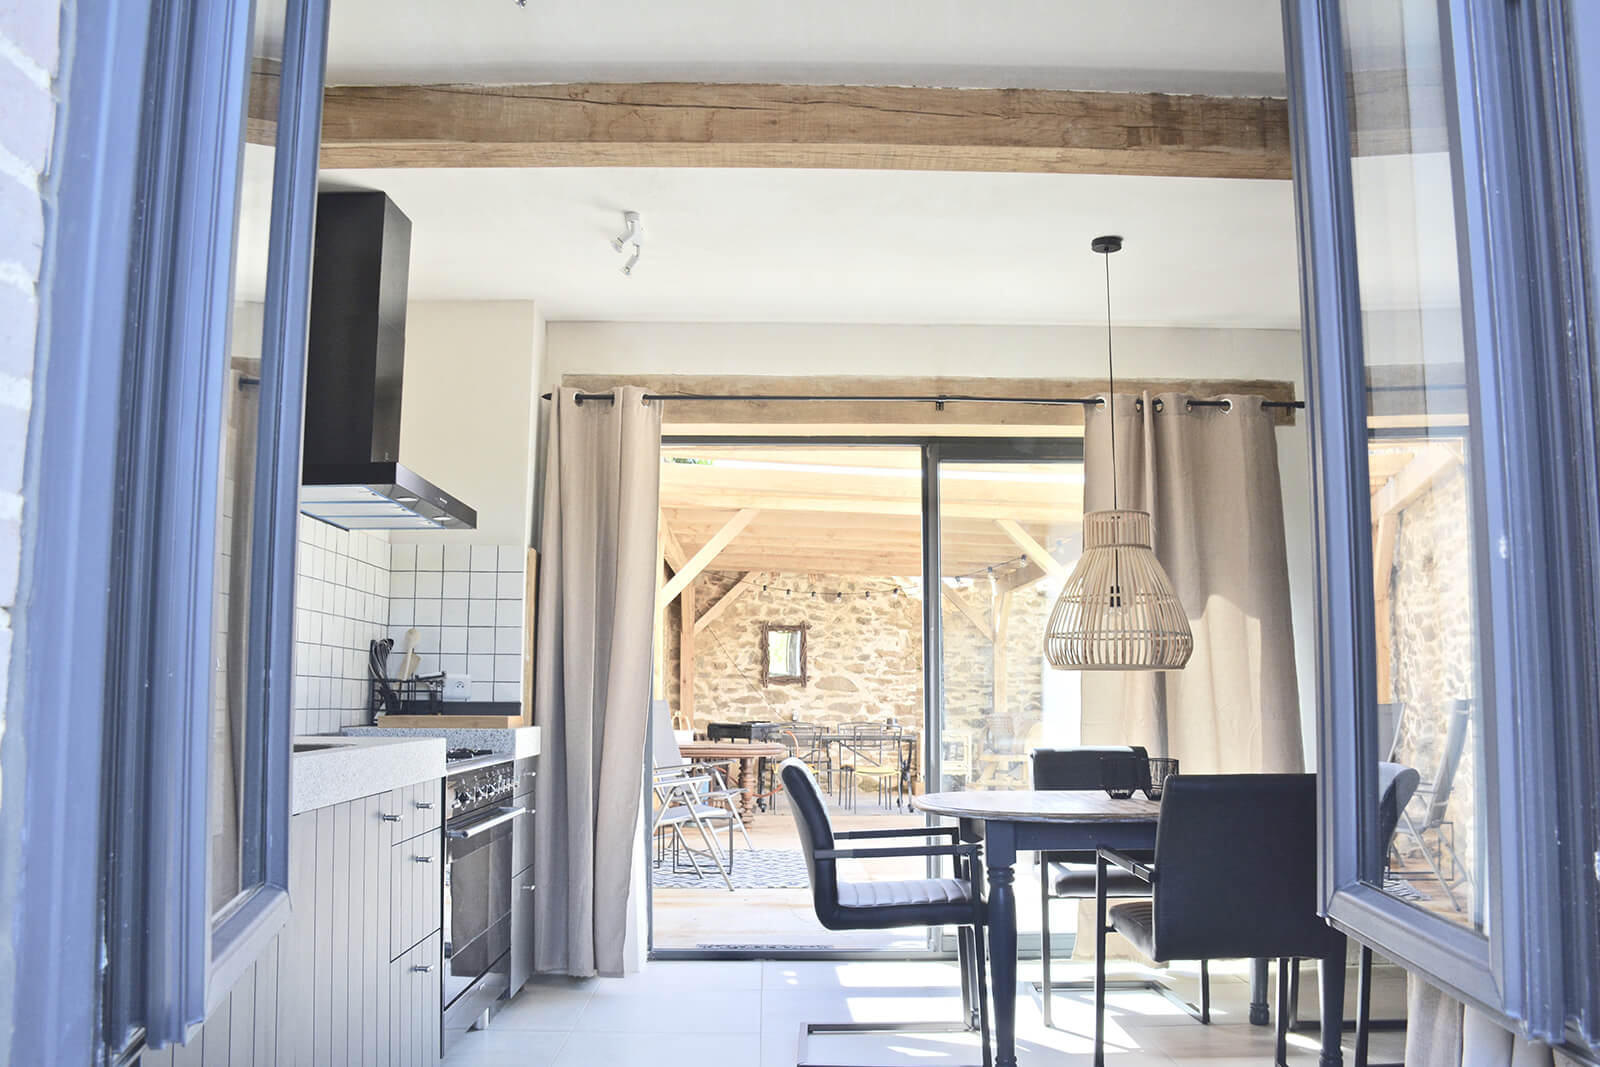 Cuisine maison de vacances LOTT Saint Germain les Belles cuisine ouverte portes coulissantes veranda couverte